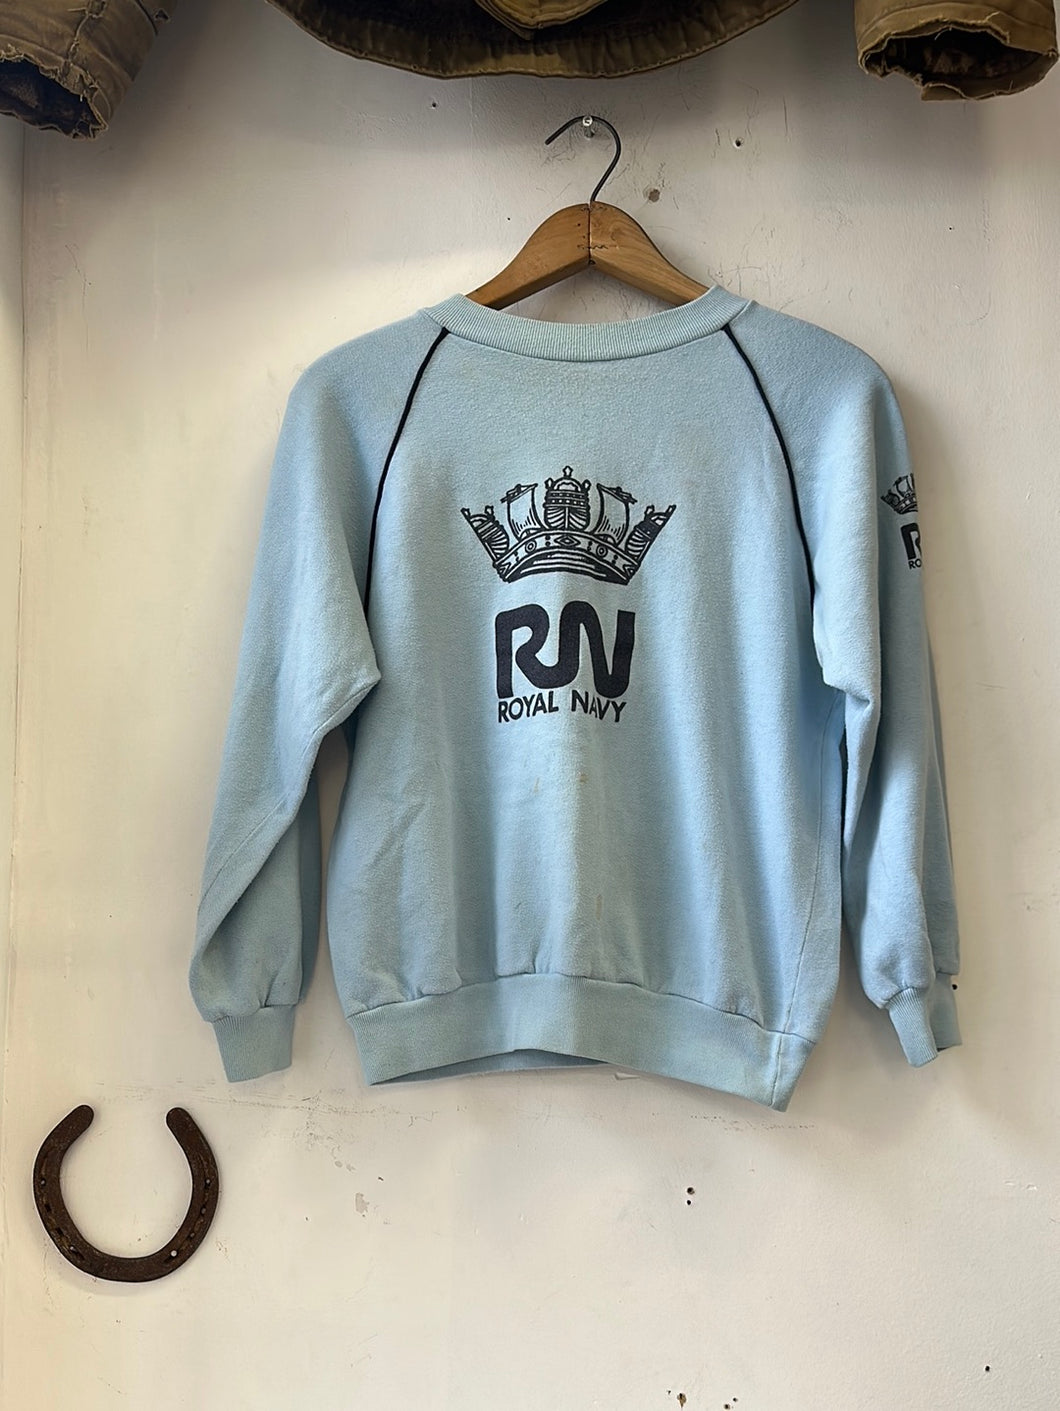 1970s Raglan Sleeve Sweatshirt “Royal Navy”